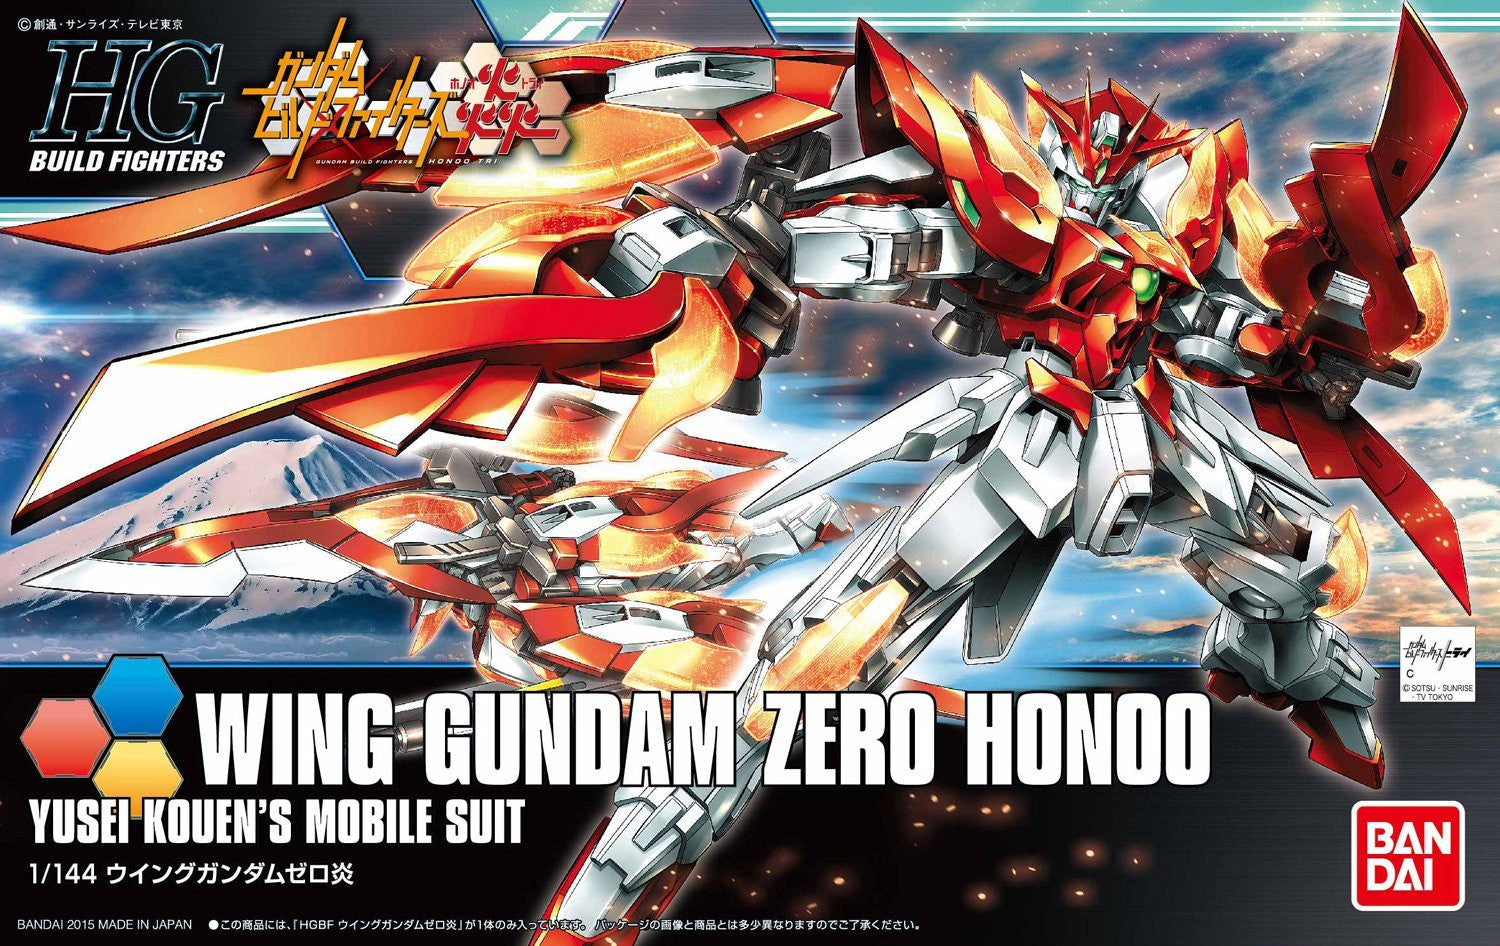 HGBF#033 Wing Gundam Zero Honoo